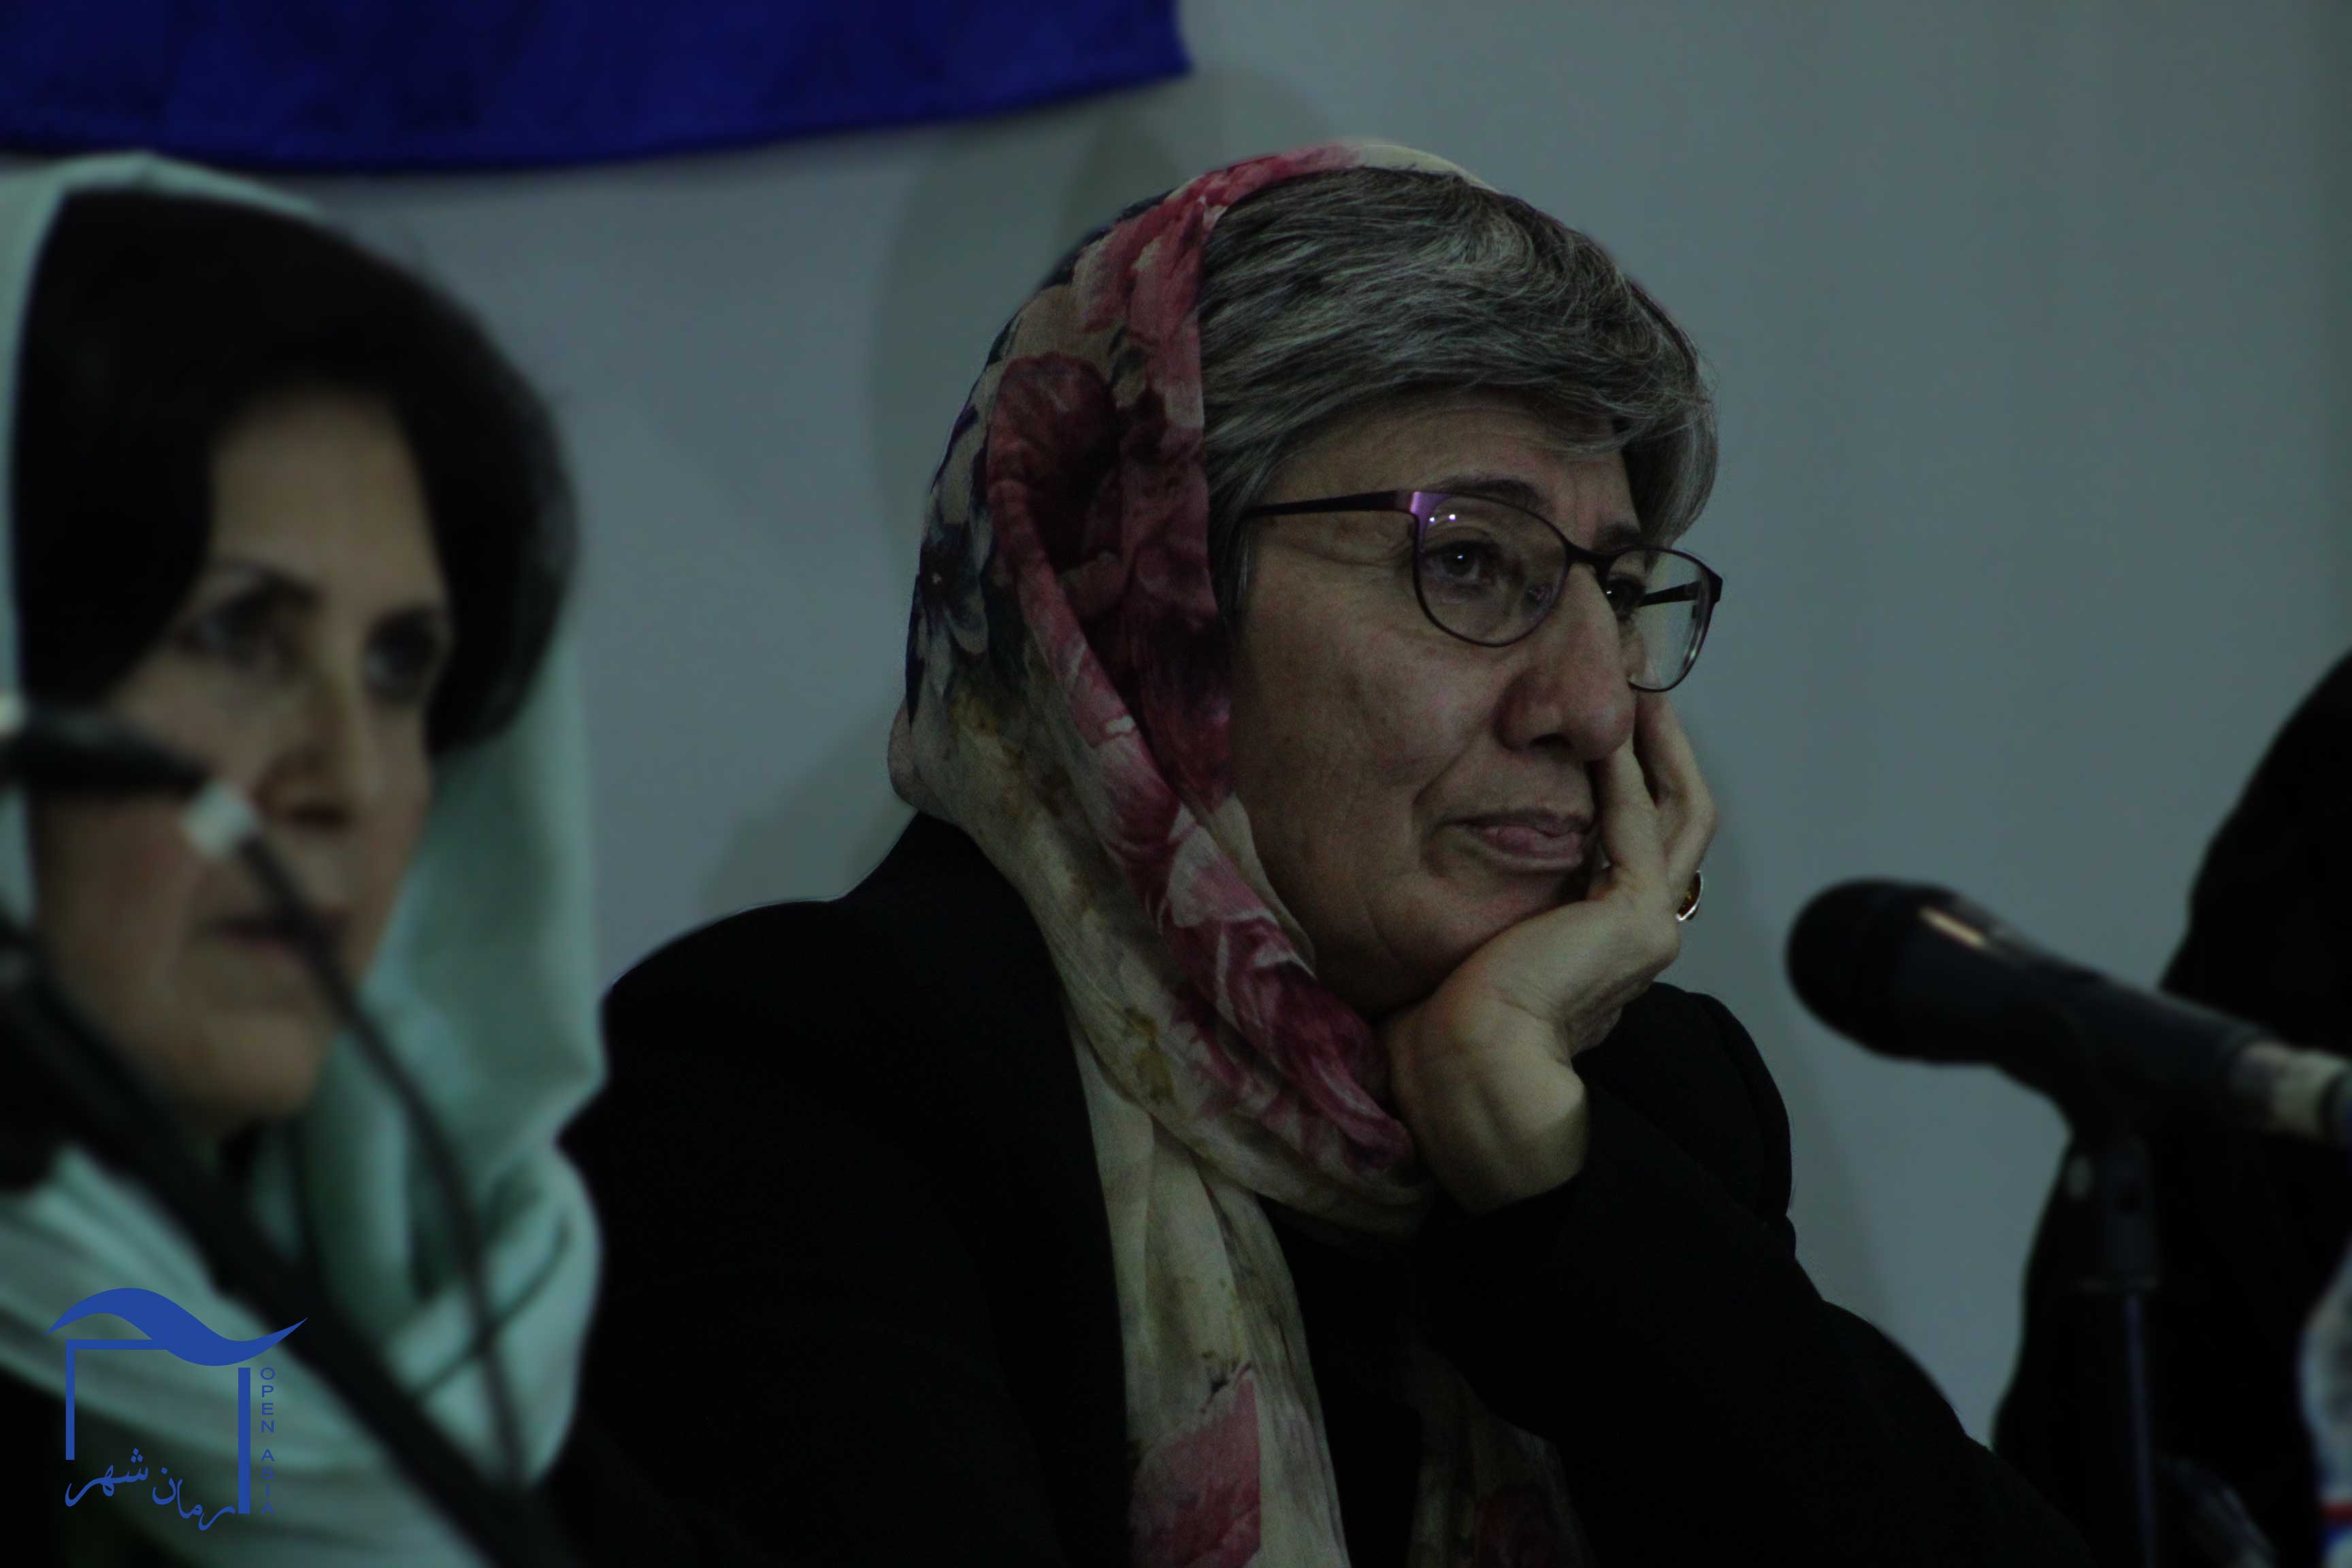 خانم سیما سمر رییس کمیسیون مستقل حقوق بشر افغانستان یکی از سخنران های روز اول این هفته بود